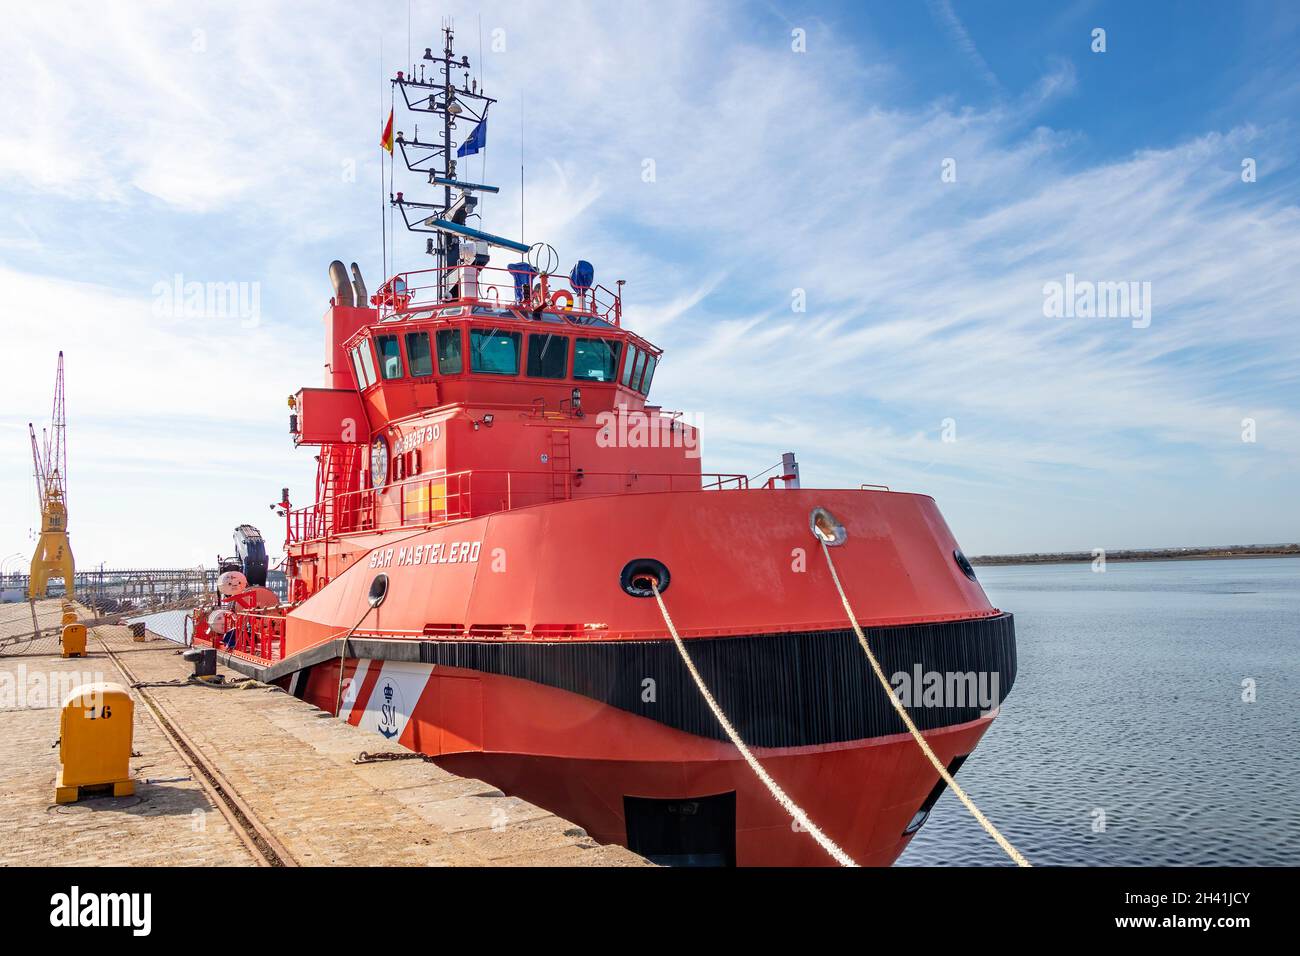 Huelva, Espagne - 25 octobre 2021 : navire de sauvetage SAR Mastelero (BS-23) amarré dans le port de Huelva.C'est un remorqueur de haute altitude de la sécurité et du sauvetage maritimes Banque D'Images